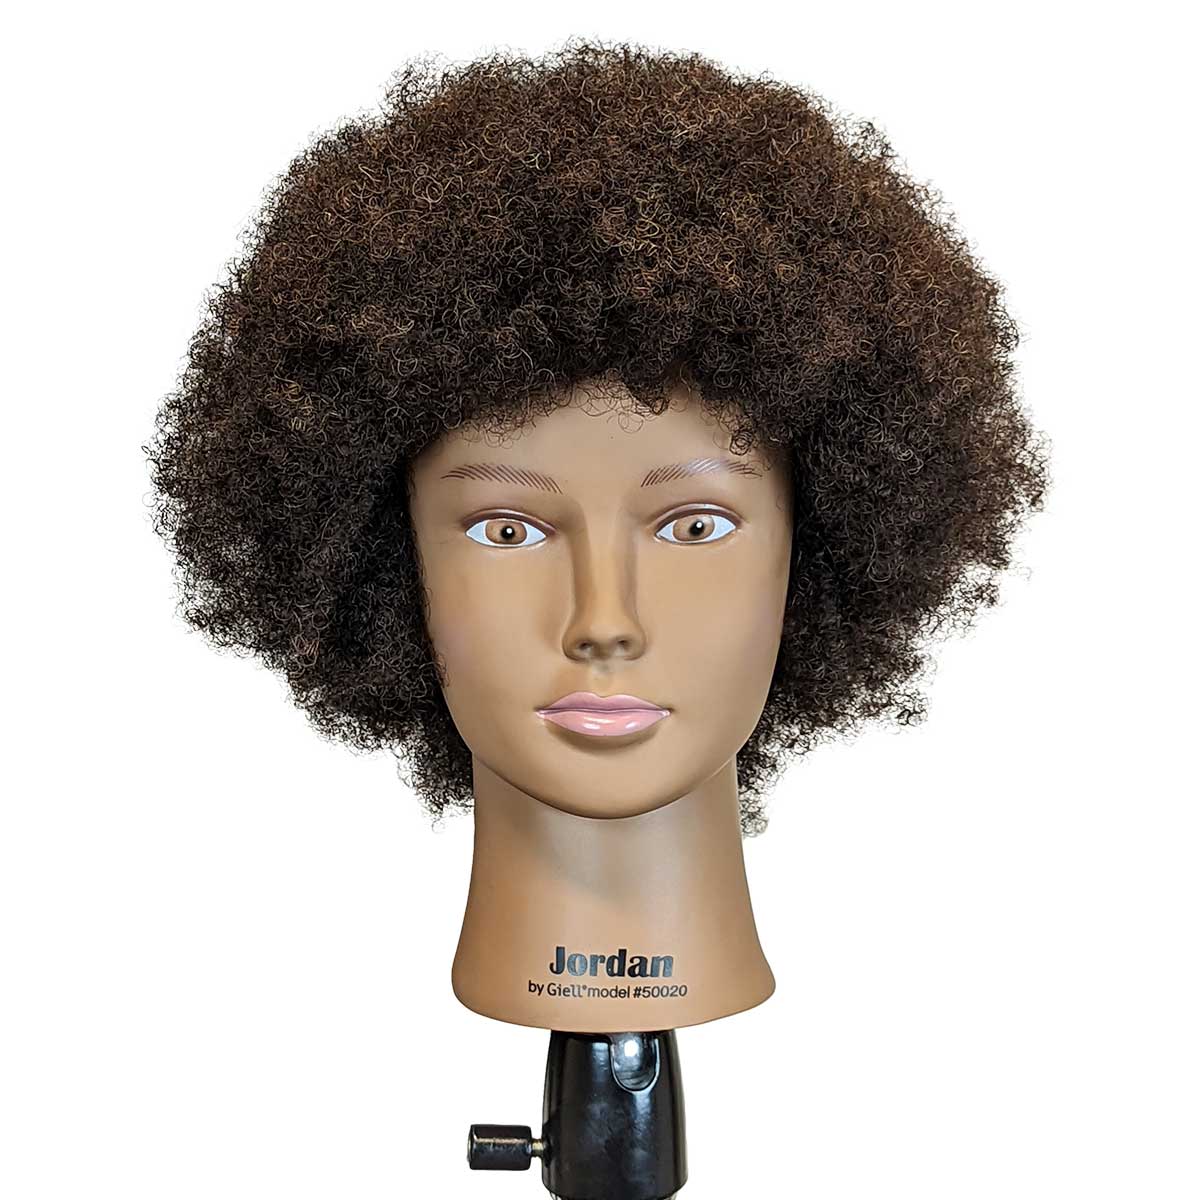 Jordan Mannequin Head Advanced Training Premium 100% Textured Human Hair